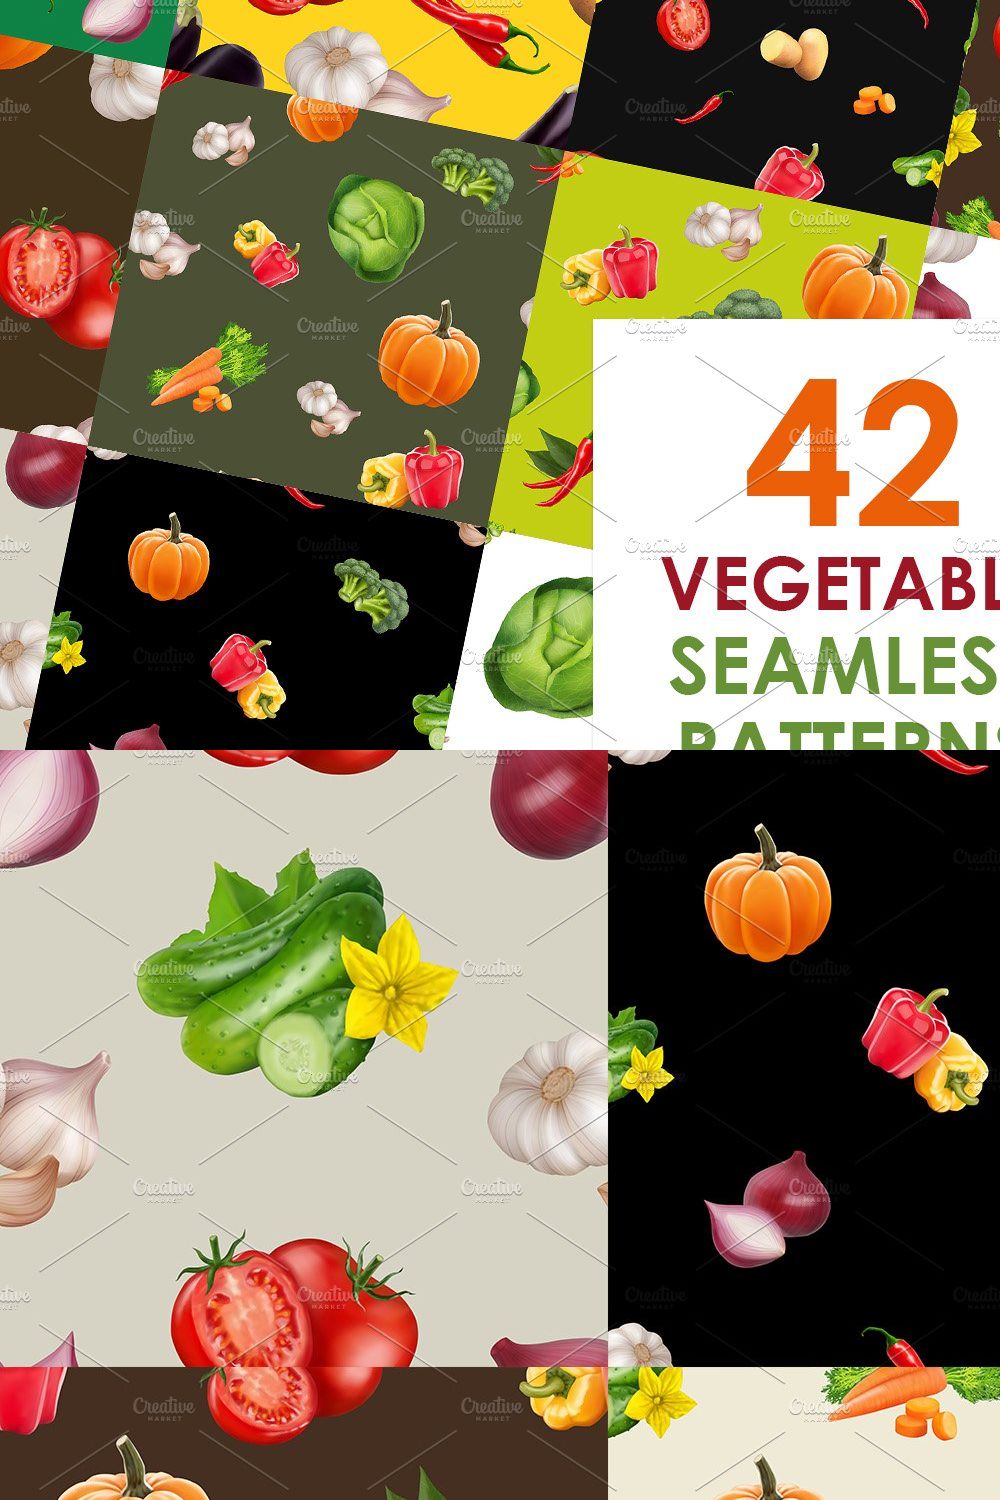 Big vegetables patterns set pinterest preview image.